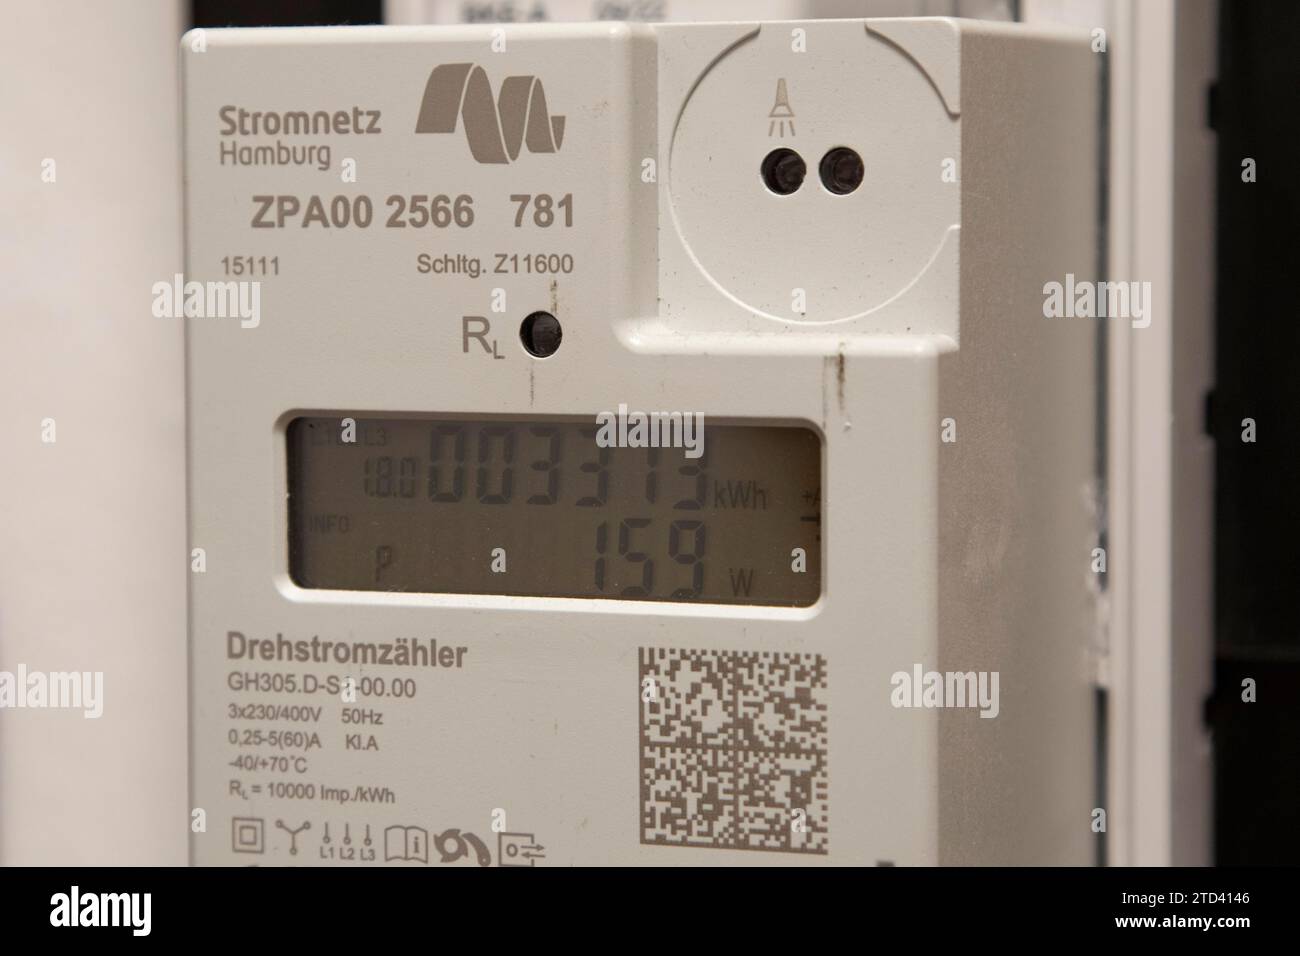 Symbolisches Bild der Energiekosten im Haushalt, digitaler Stromzähler in einer Wohnung, Betreiber Stromnetz Hamburg, Hamburg, Deutschland Stockfoto